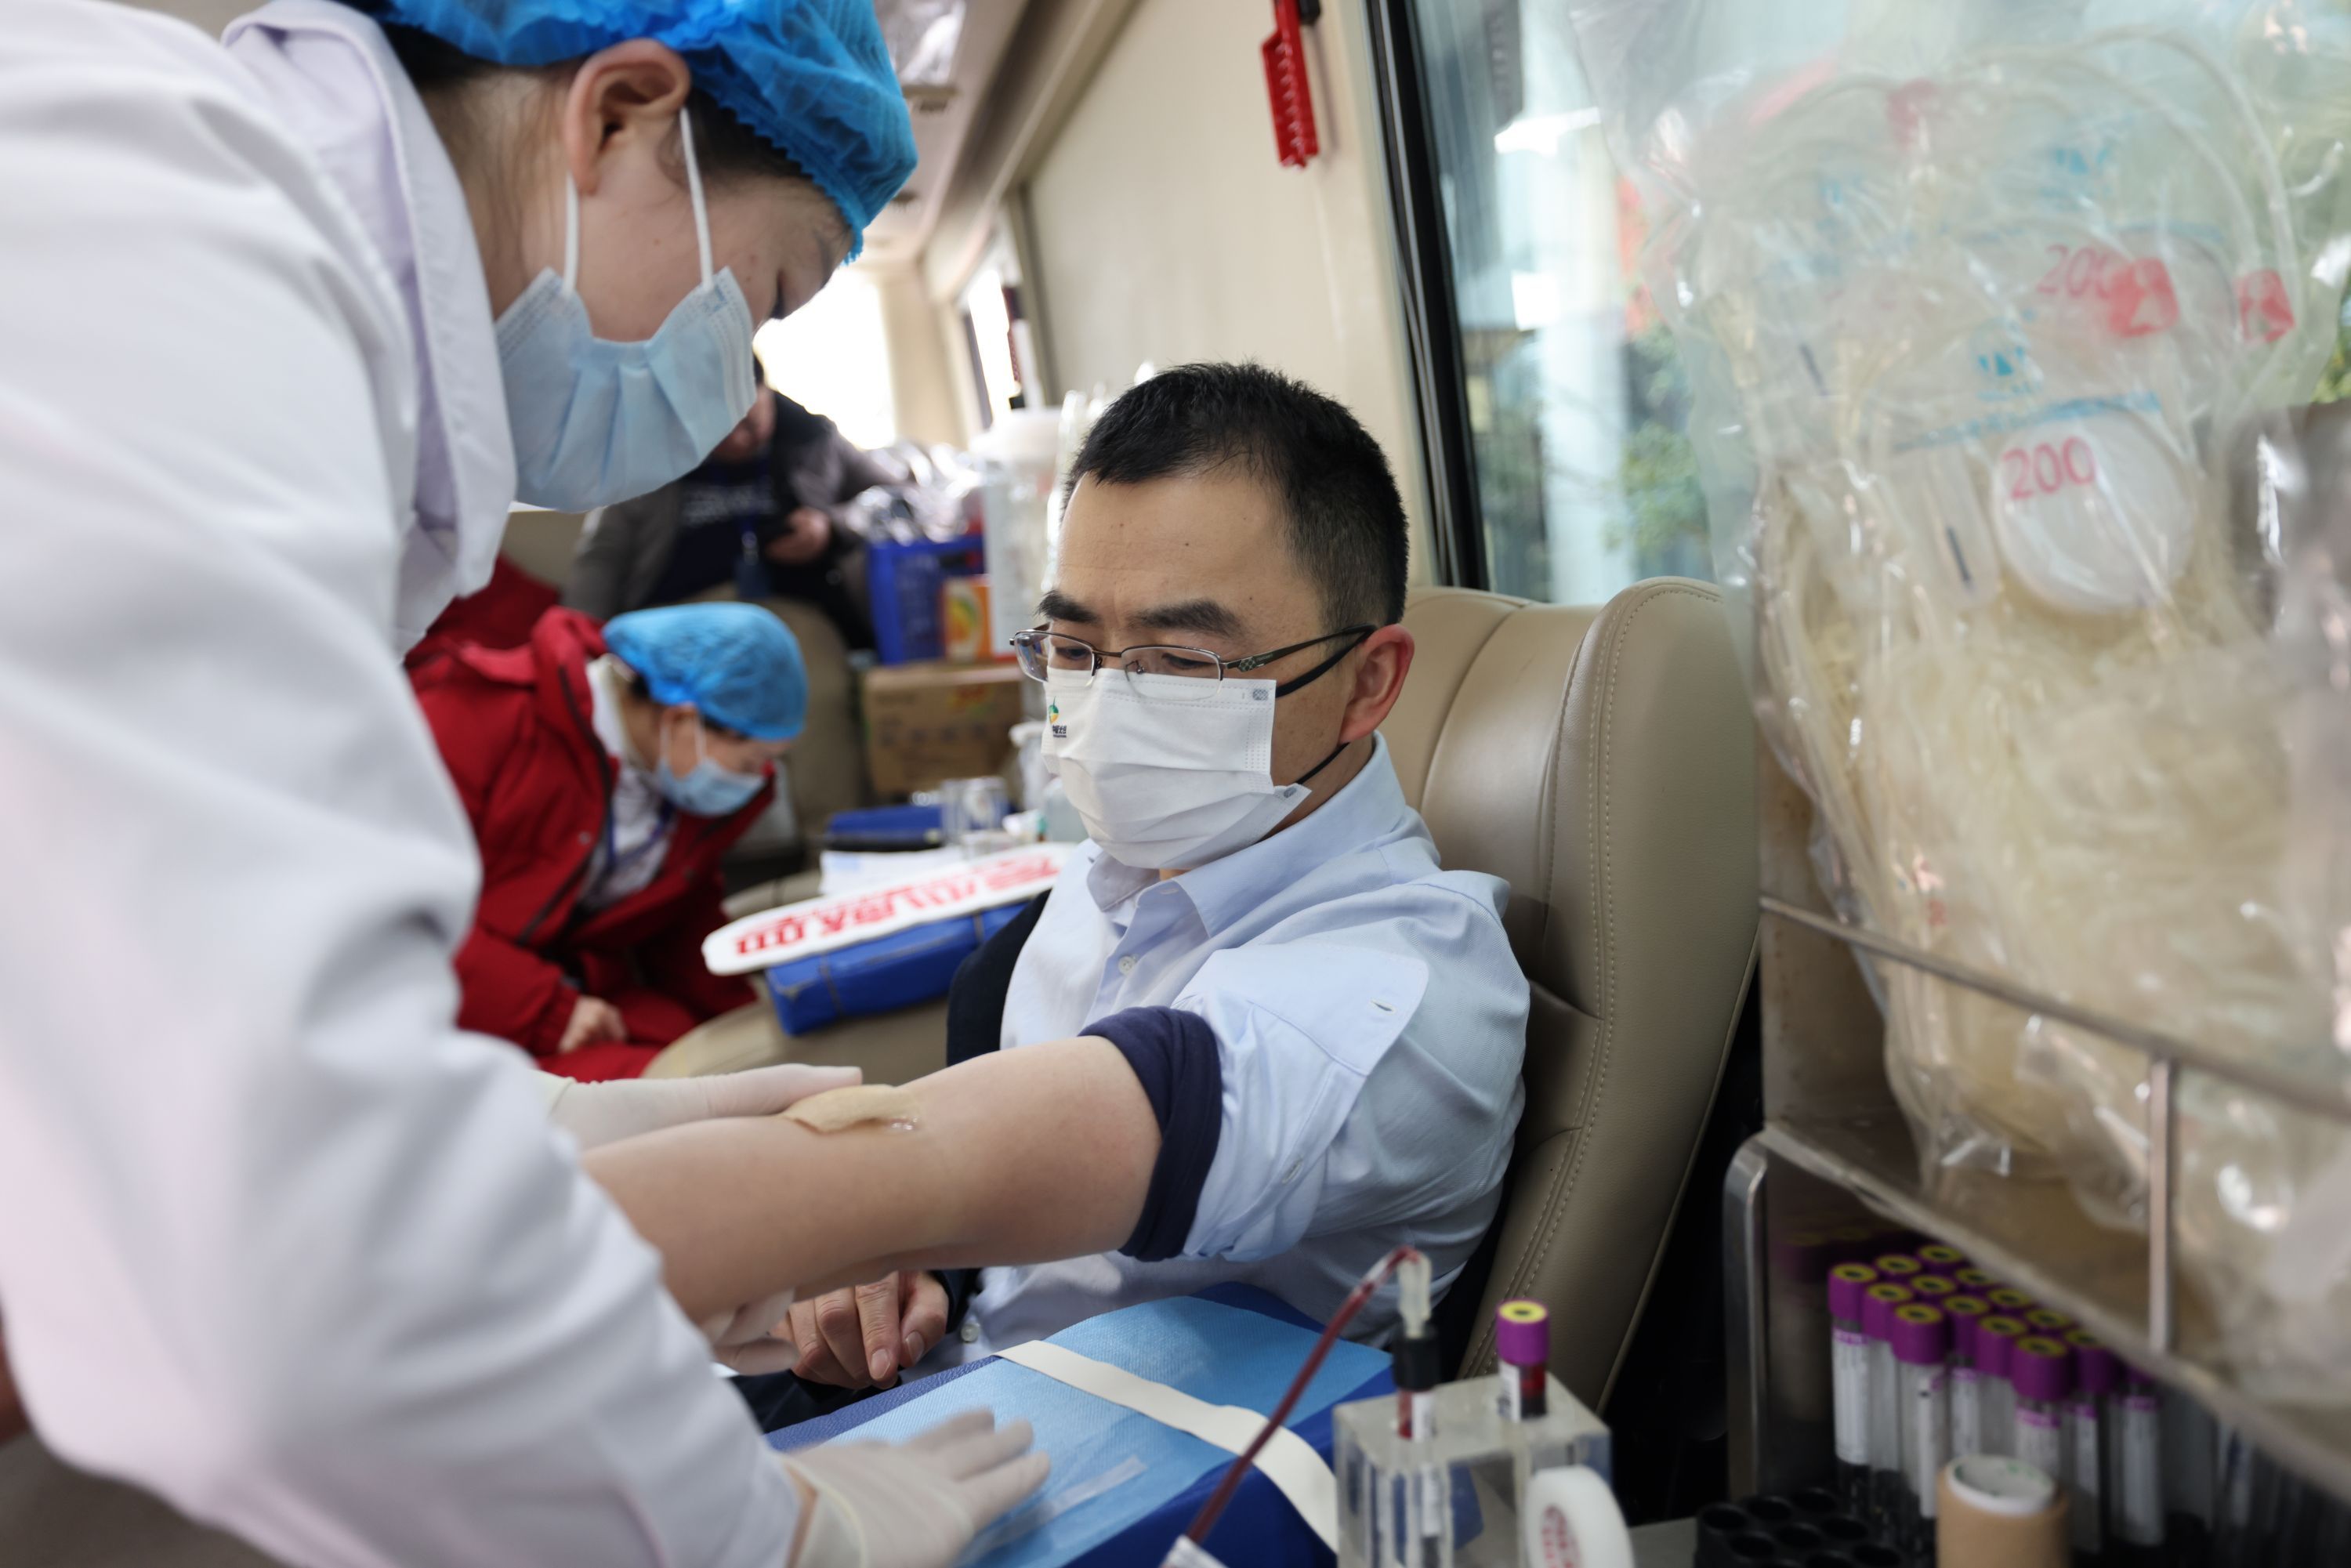 来自高科医疗器械园区企业武汉金开瑞的李昆鹏也一大早赶过来参与献血